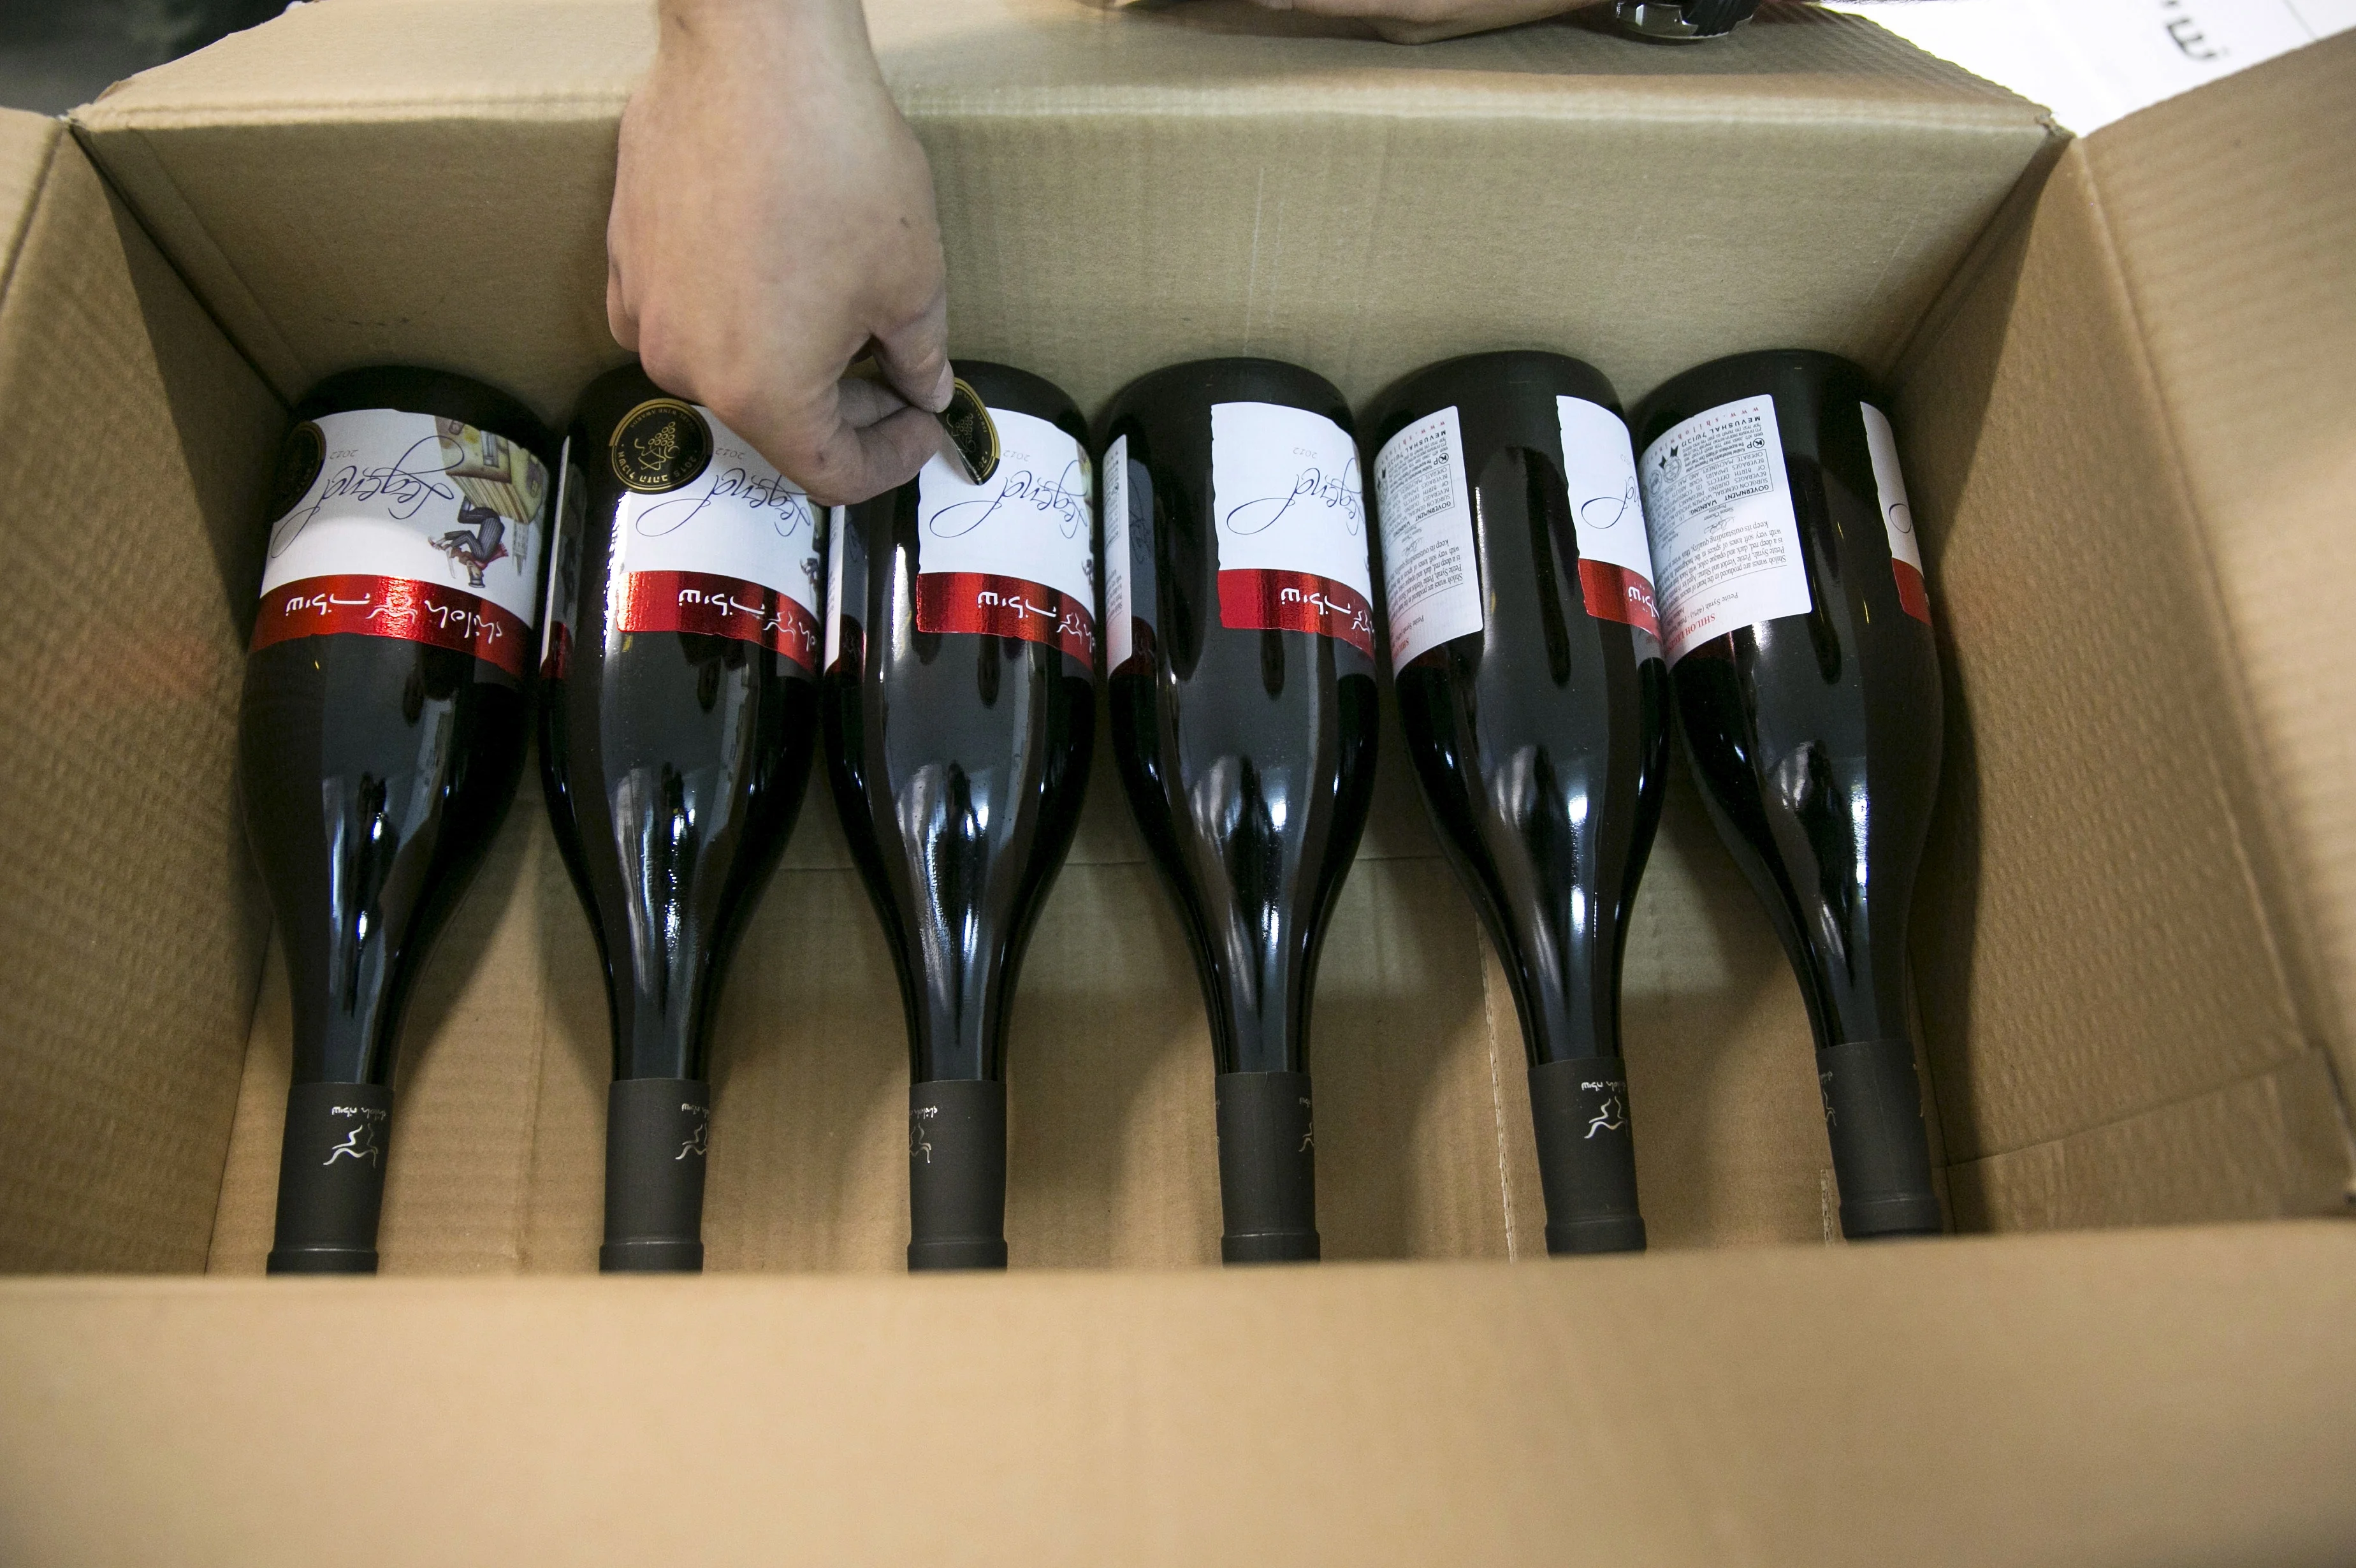 יין מההתנחלות שילה, שיסומן באירופה כ''מוצר מההתנחלויות''